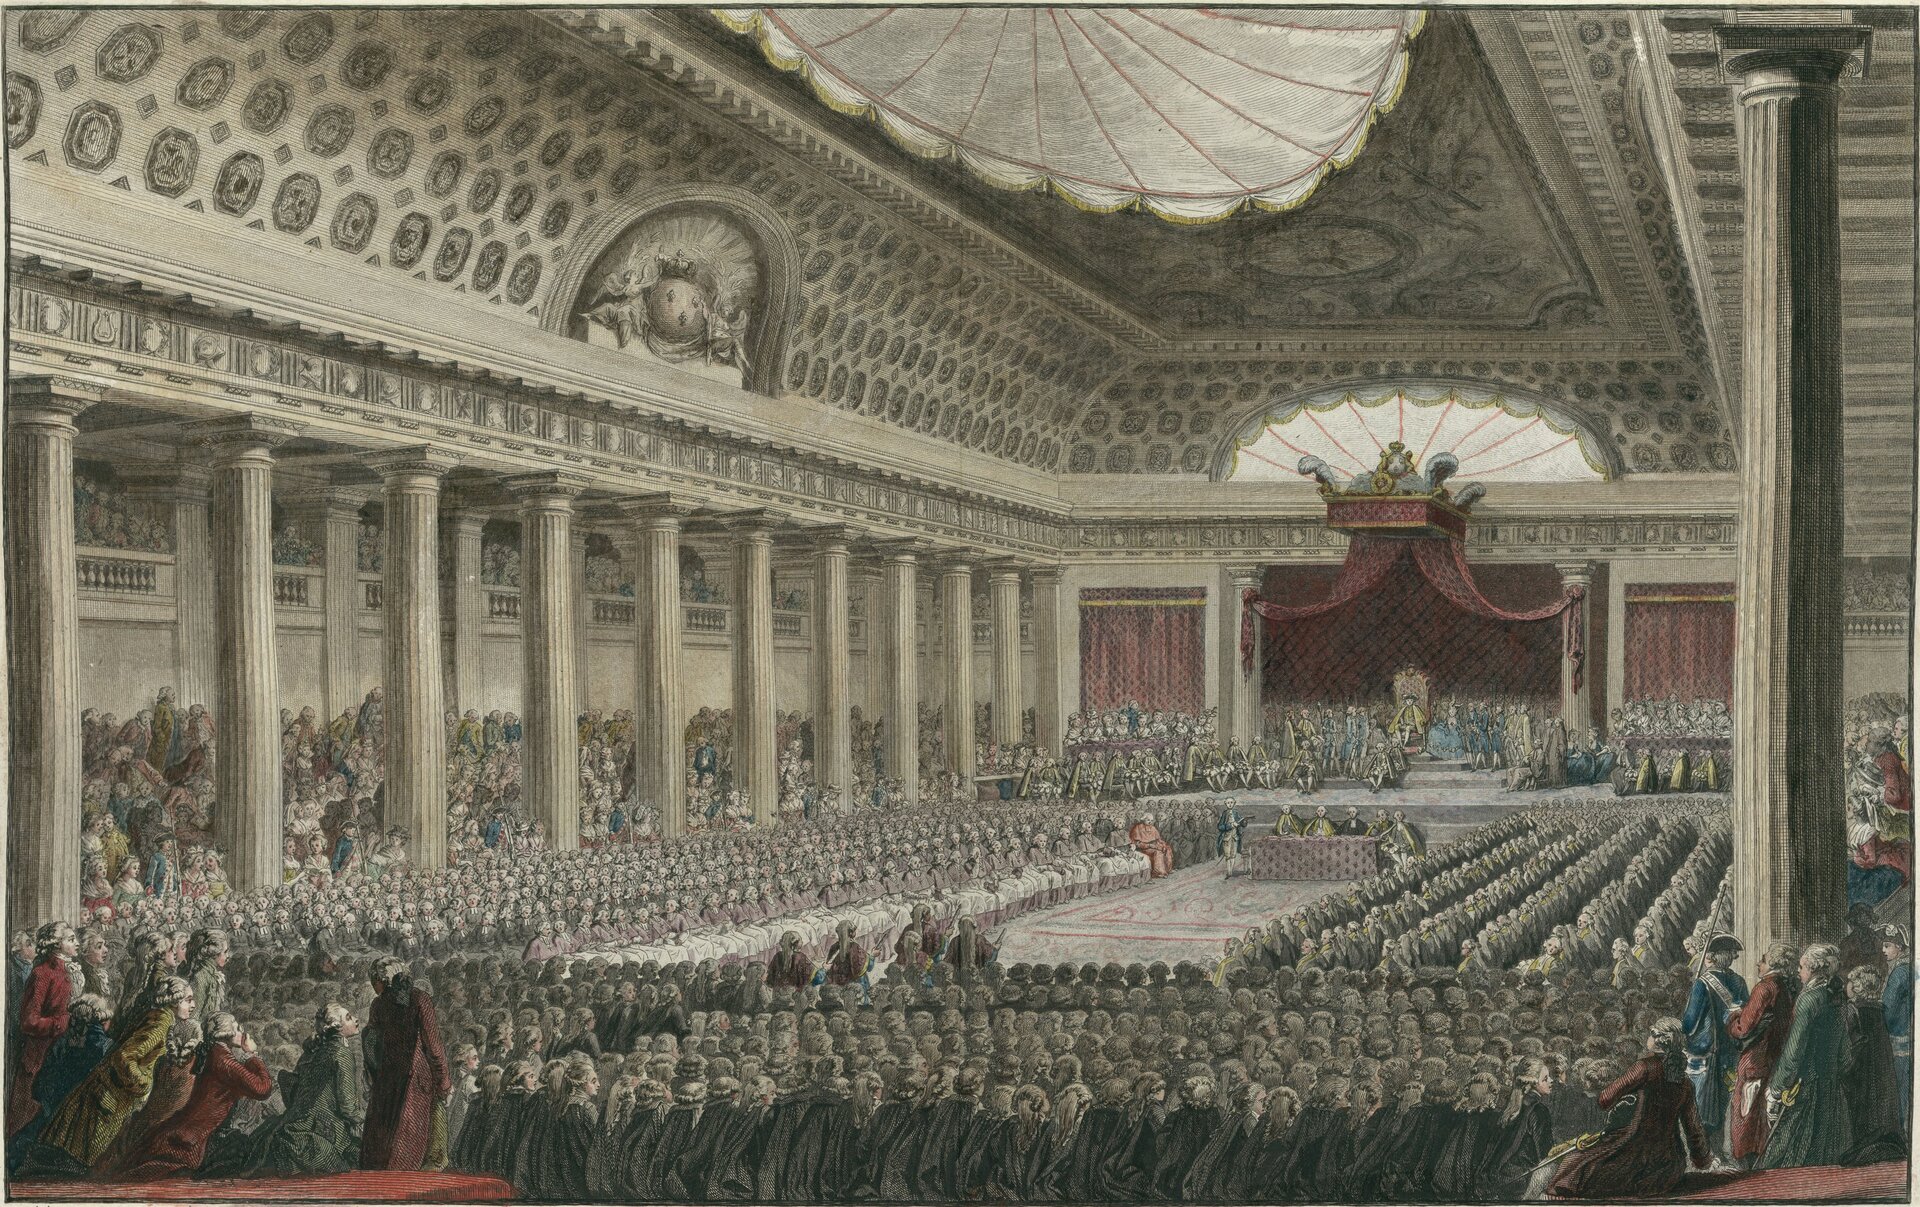 Ilustracja przedstawia wnętrze dużej sali z kolumnami. W sali są zgromadzeni ludzie, którzy siedzą po jej wszystkich bokach. Na końcu sali znajduje się tron otoczony czerwonymi zasłonami.